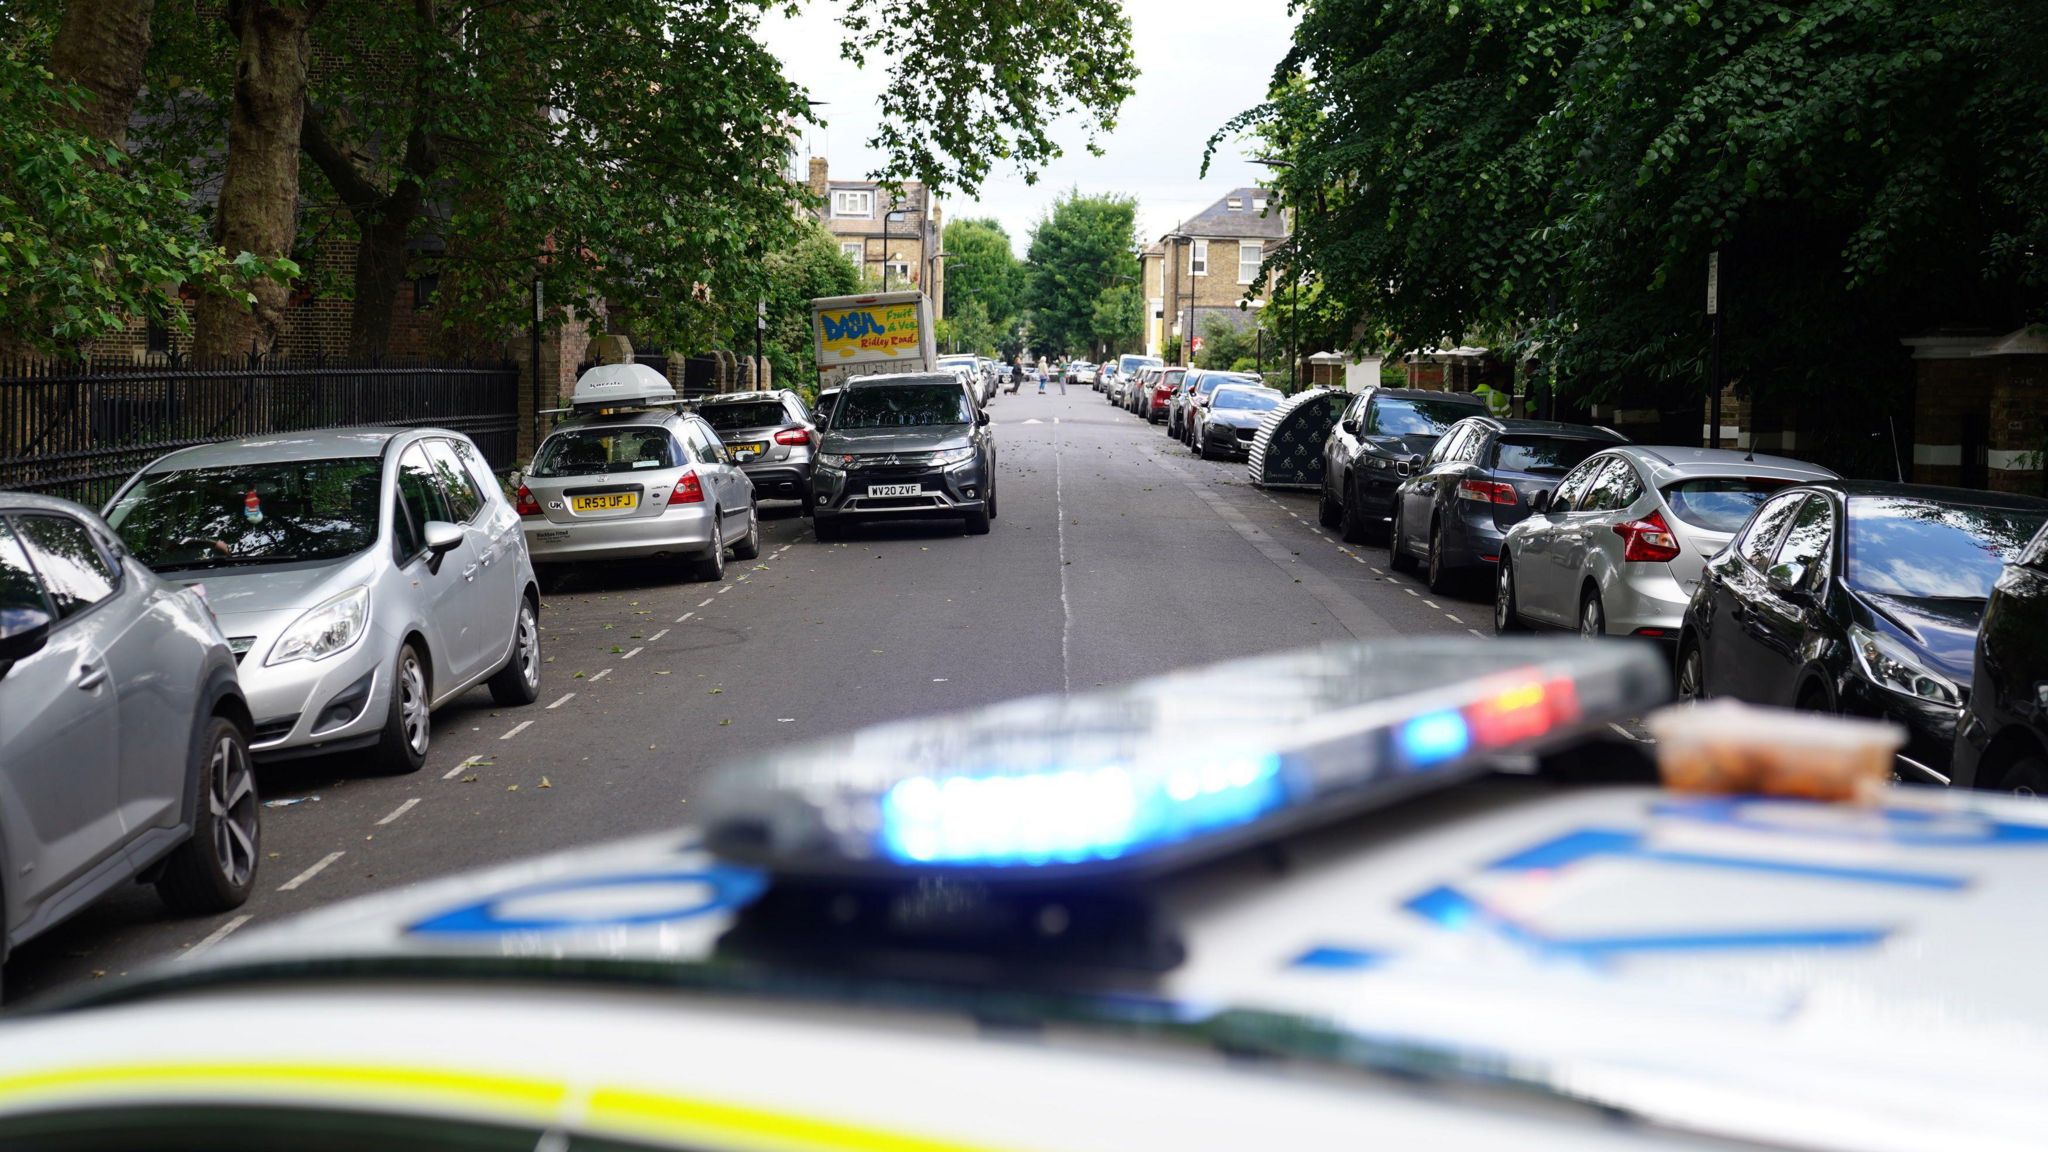 A view of the scene where the bike was left in Colvestone Crescent, Dalston